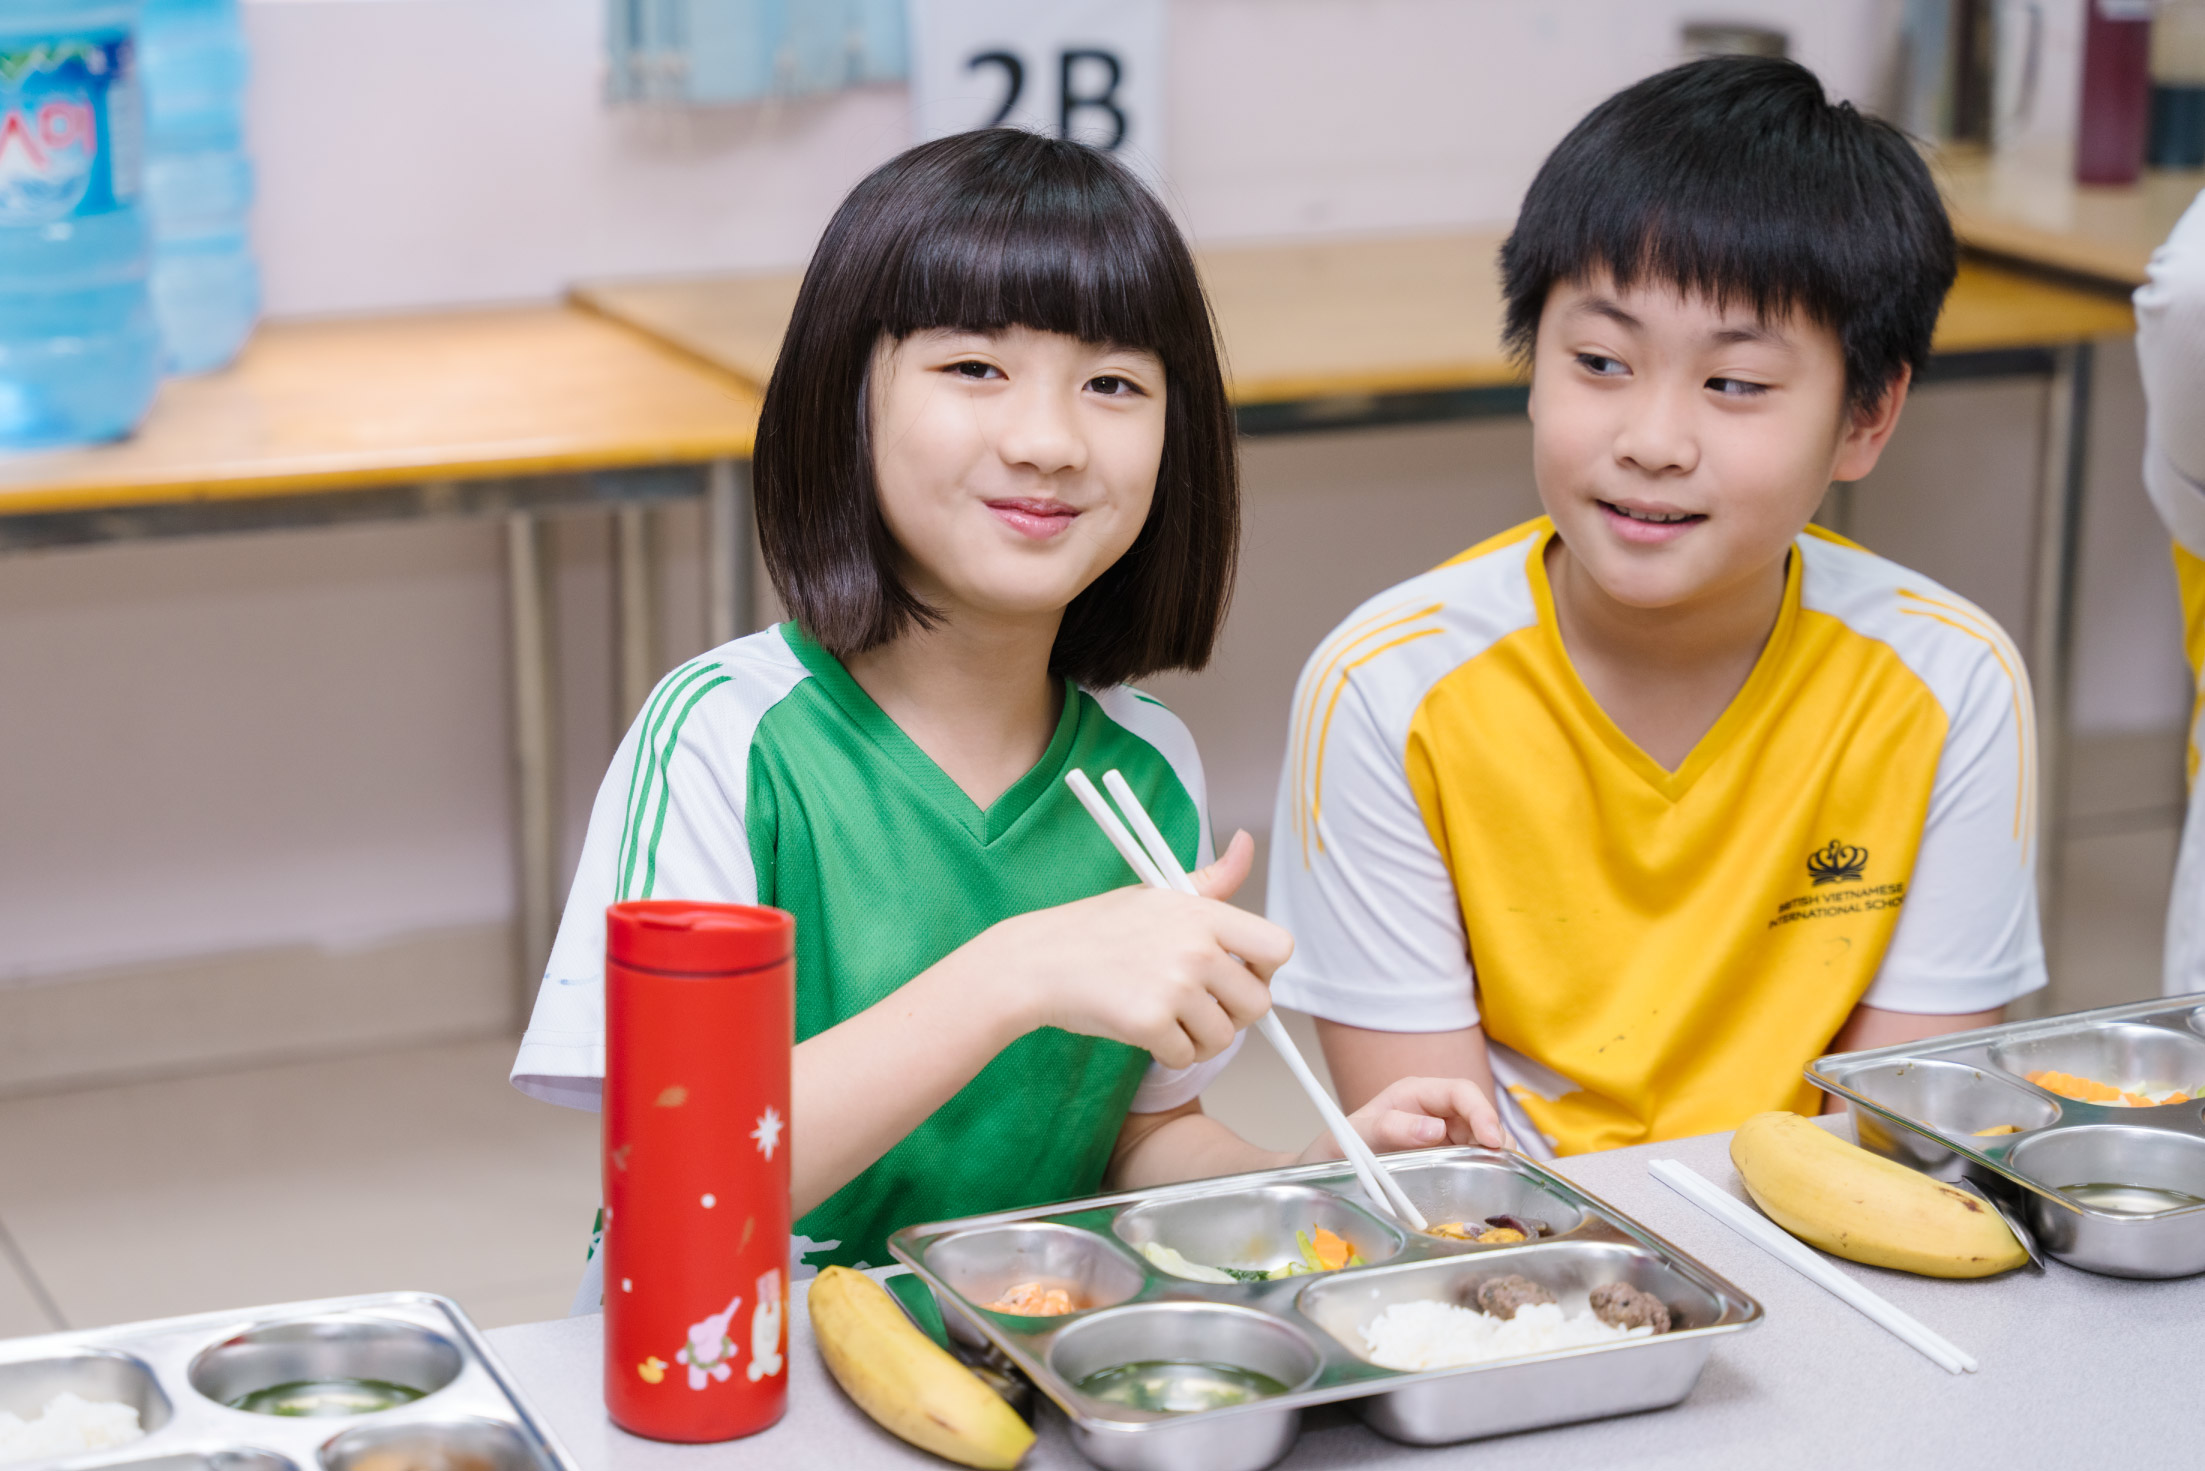 Tổ chức Giáo dục Nord Anglia đẩy mạnh chương trình chăm sóc sức khỏe tinh thần cho học sinh tại Việt Nam - The power of wellbeing in education strengthens in Vietnam through Nord Anglia Education